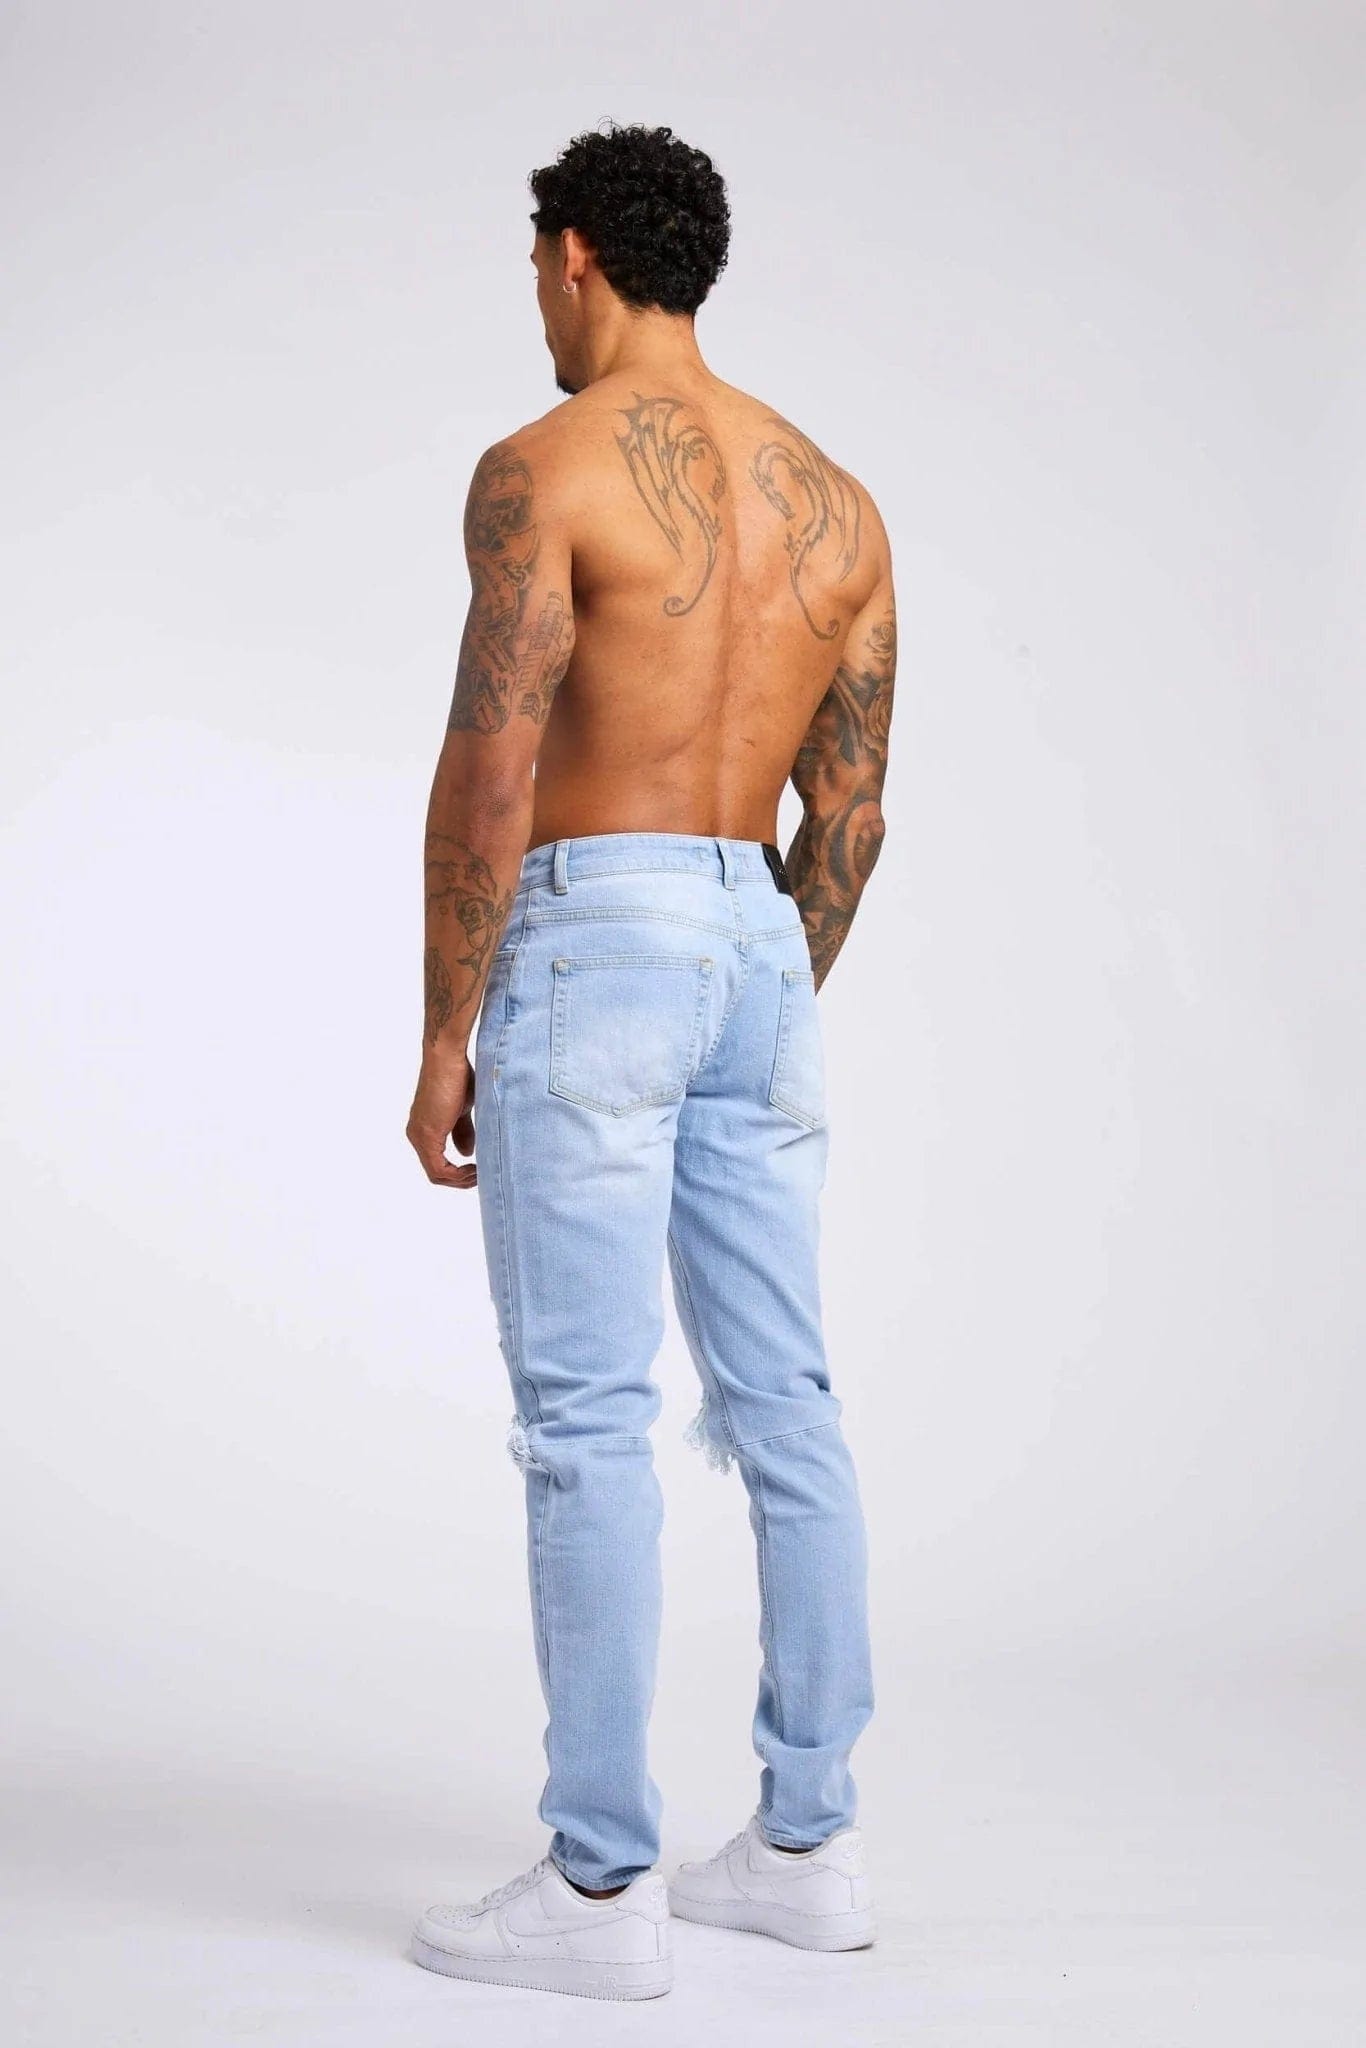 Legend London Jeans SLIM FIT JEANS - LIGHT BLUE WASH DESTROYED KNEE